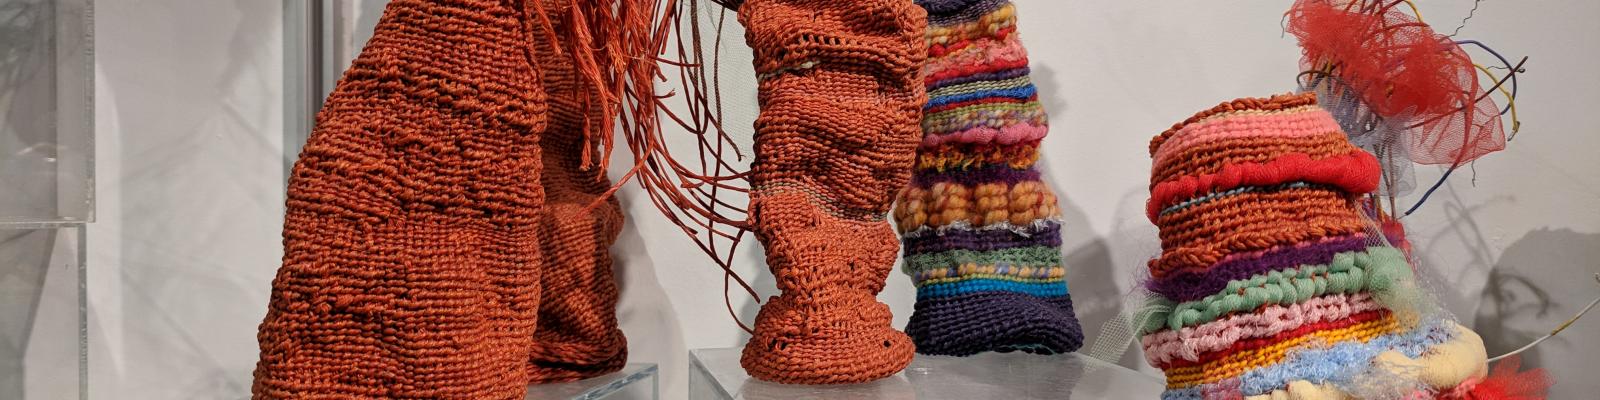 Grouping of woven fiber sculptures